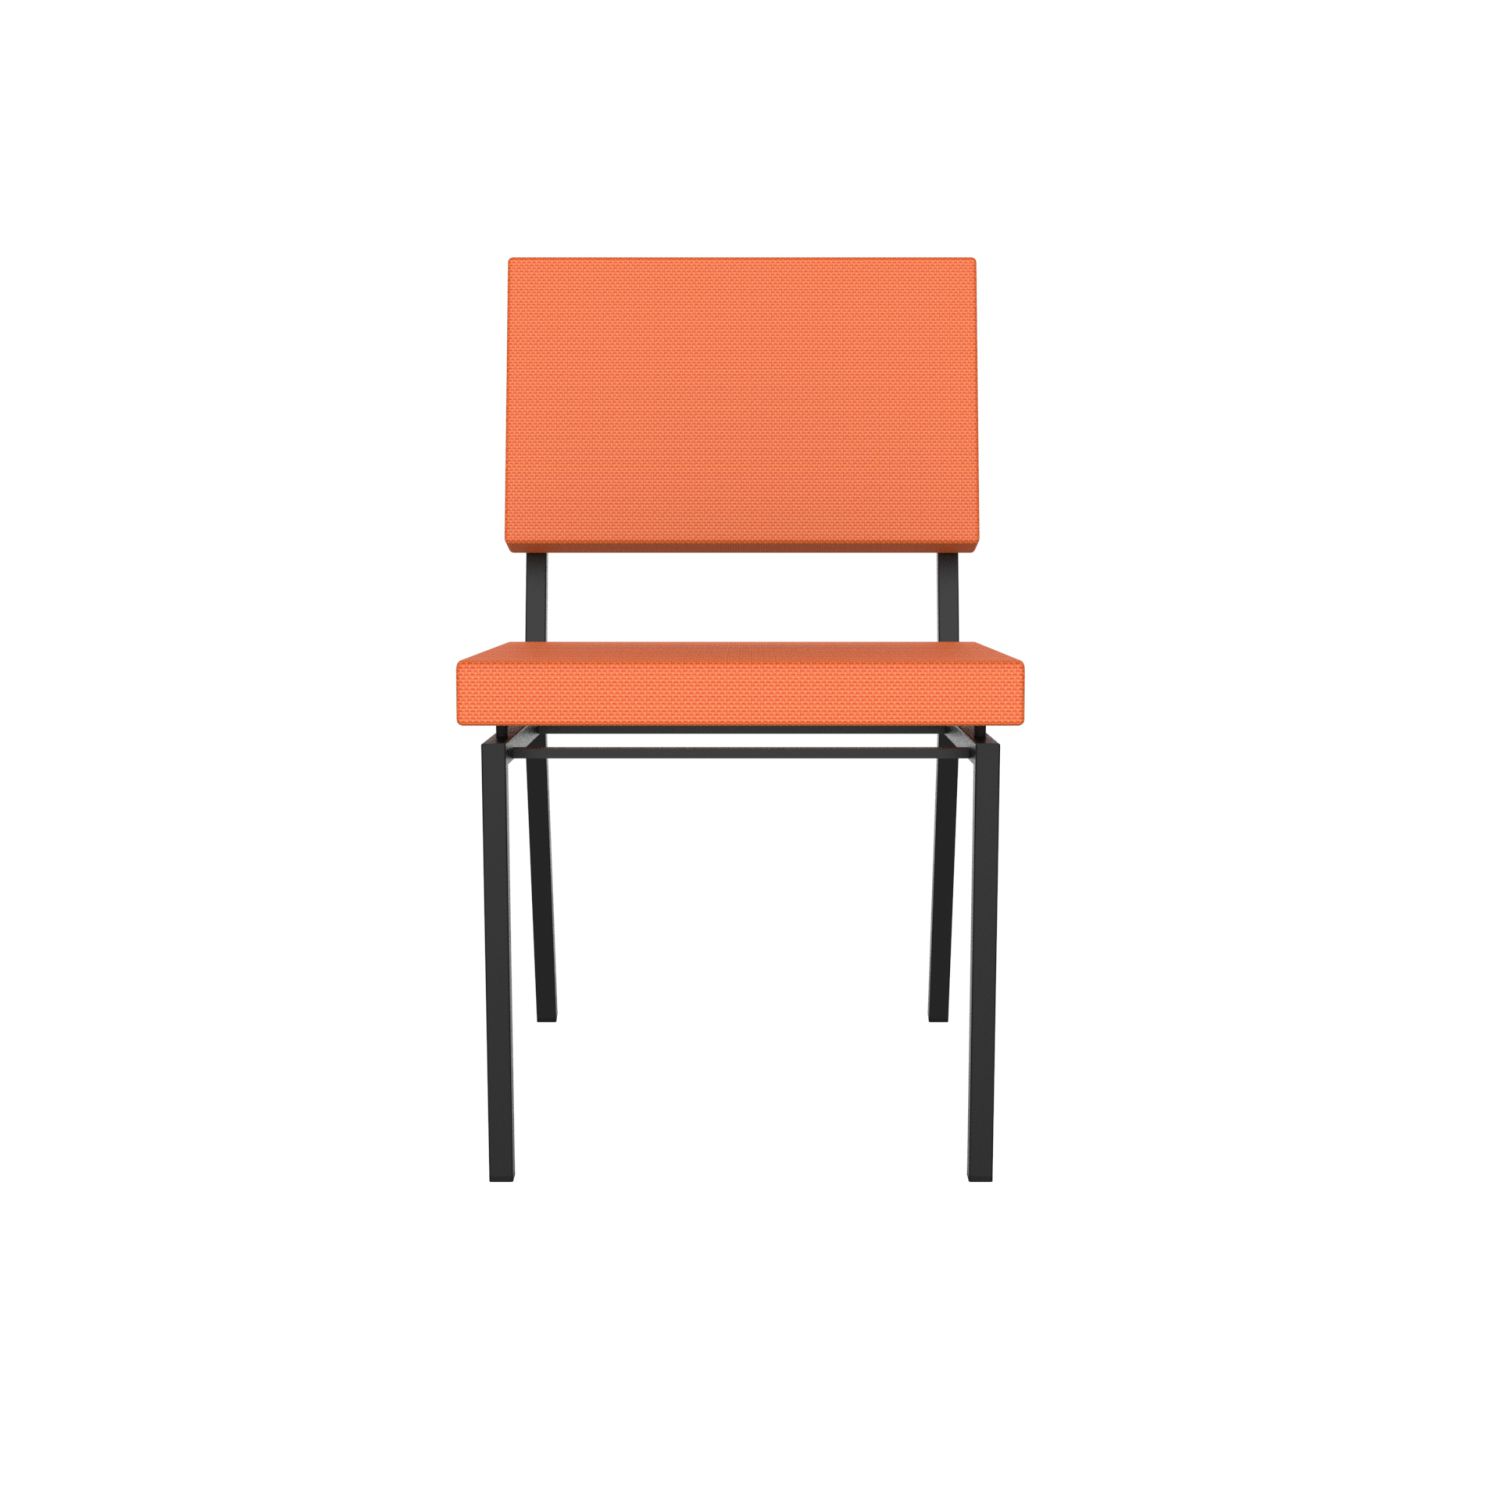 lensvelt gerrit veenendaal chair without armrests burn orange 102 price level 1 black frame ral9005 hard leg ends